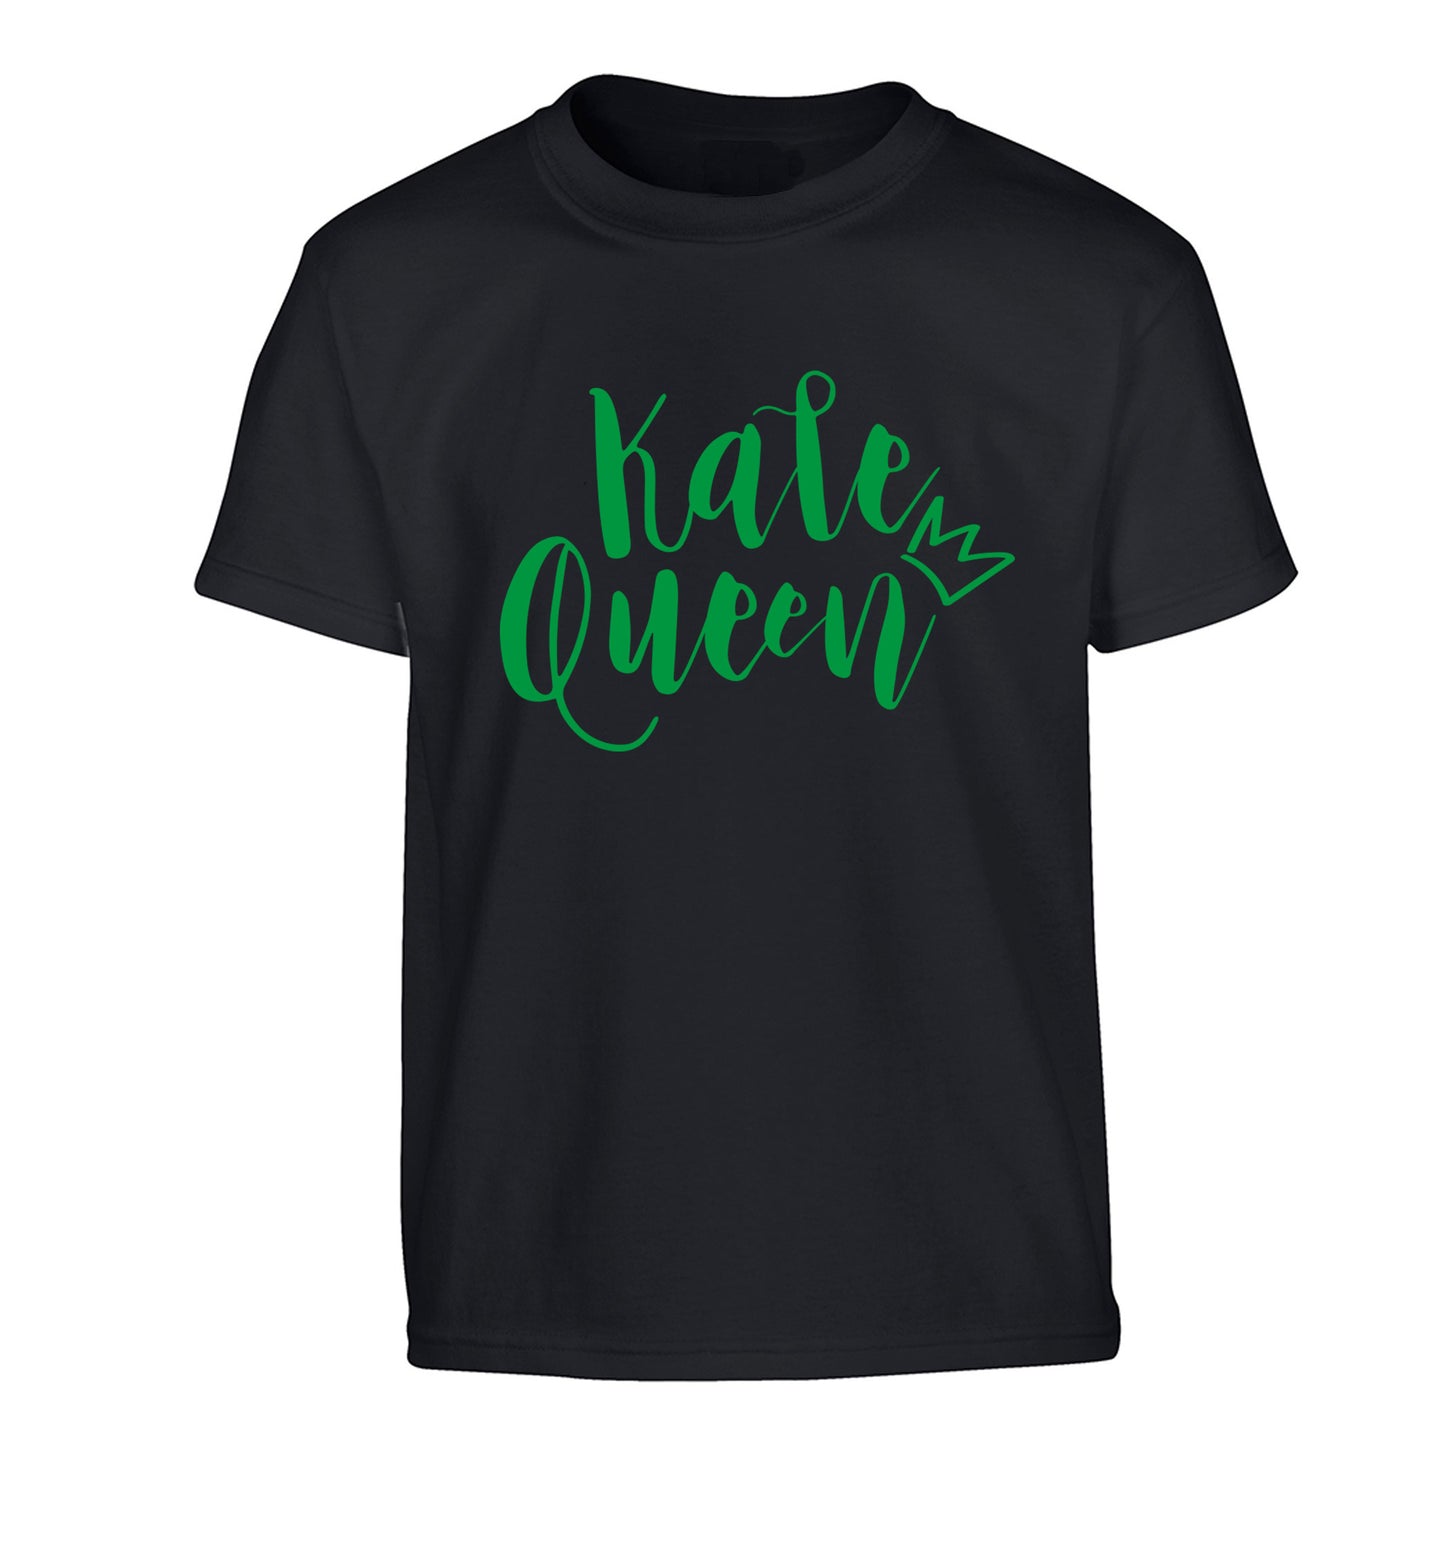 Kale Queen Children's black Tshirt 12-14 Years